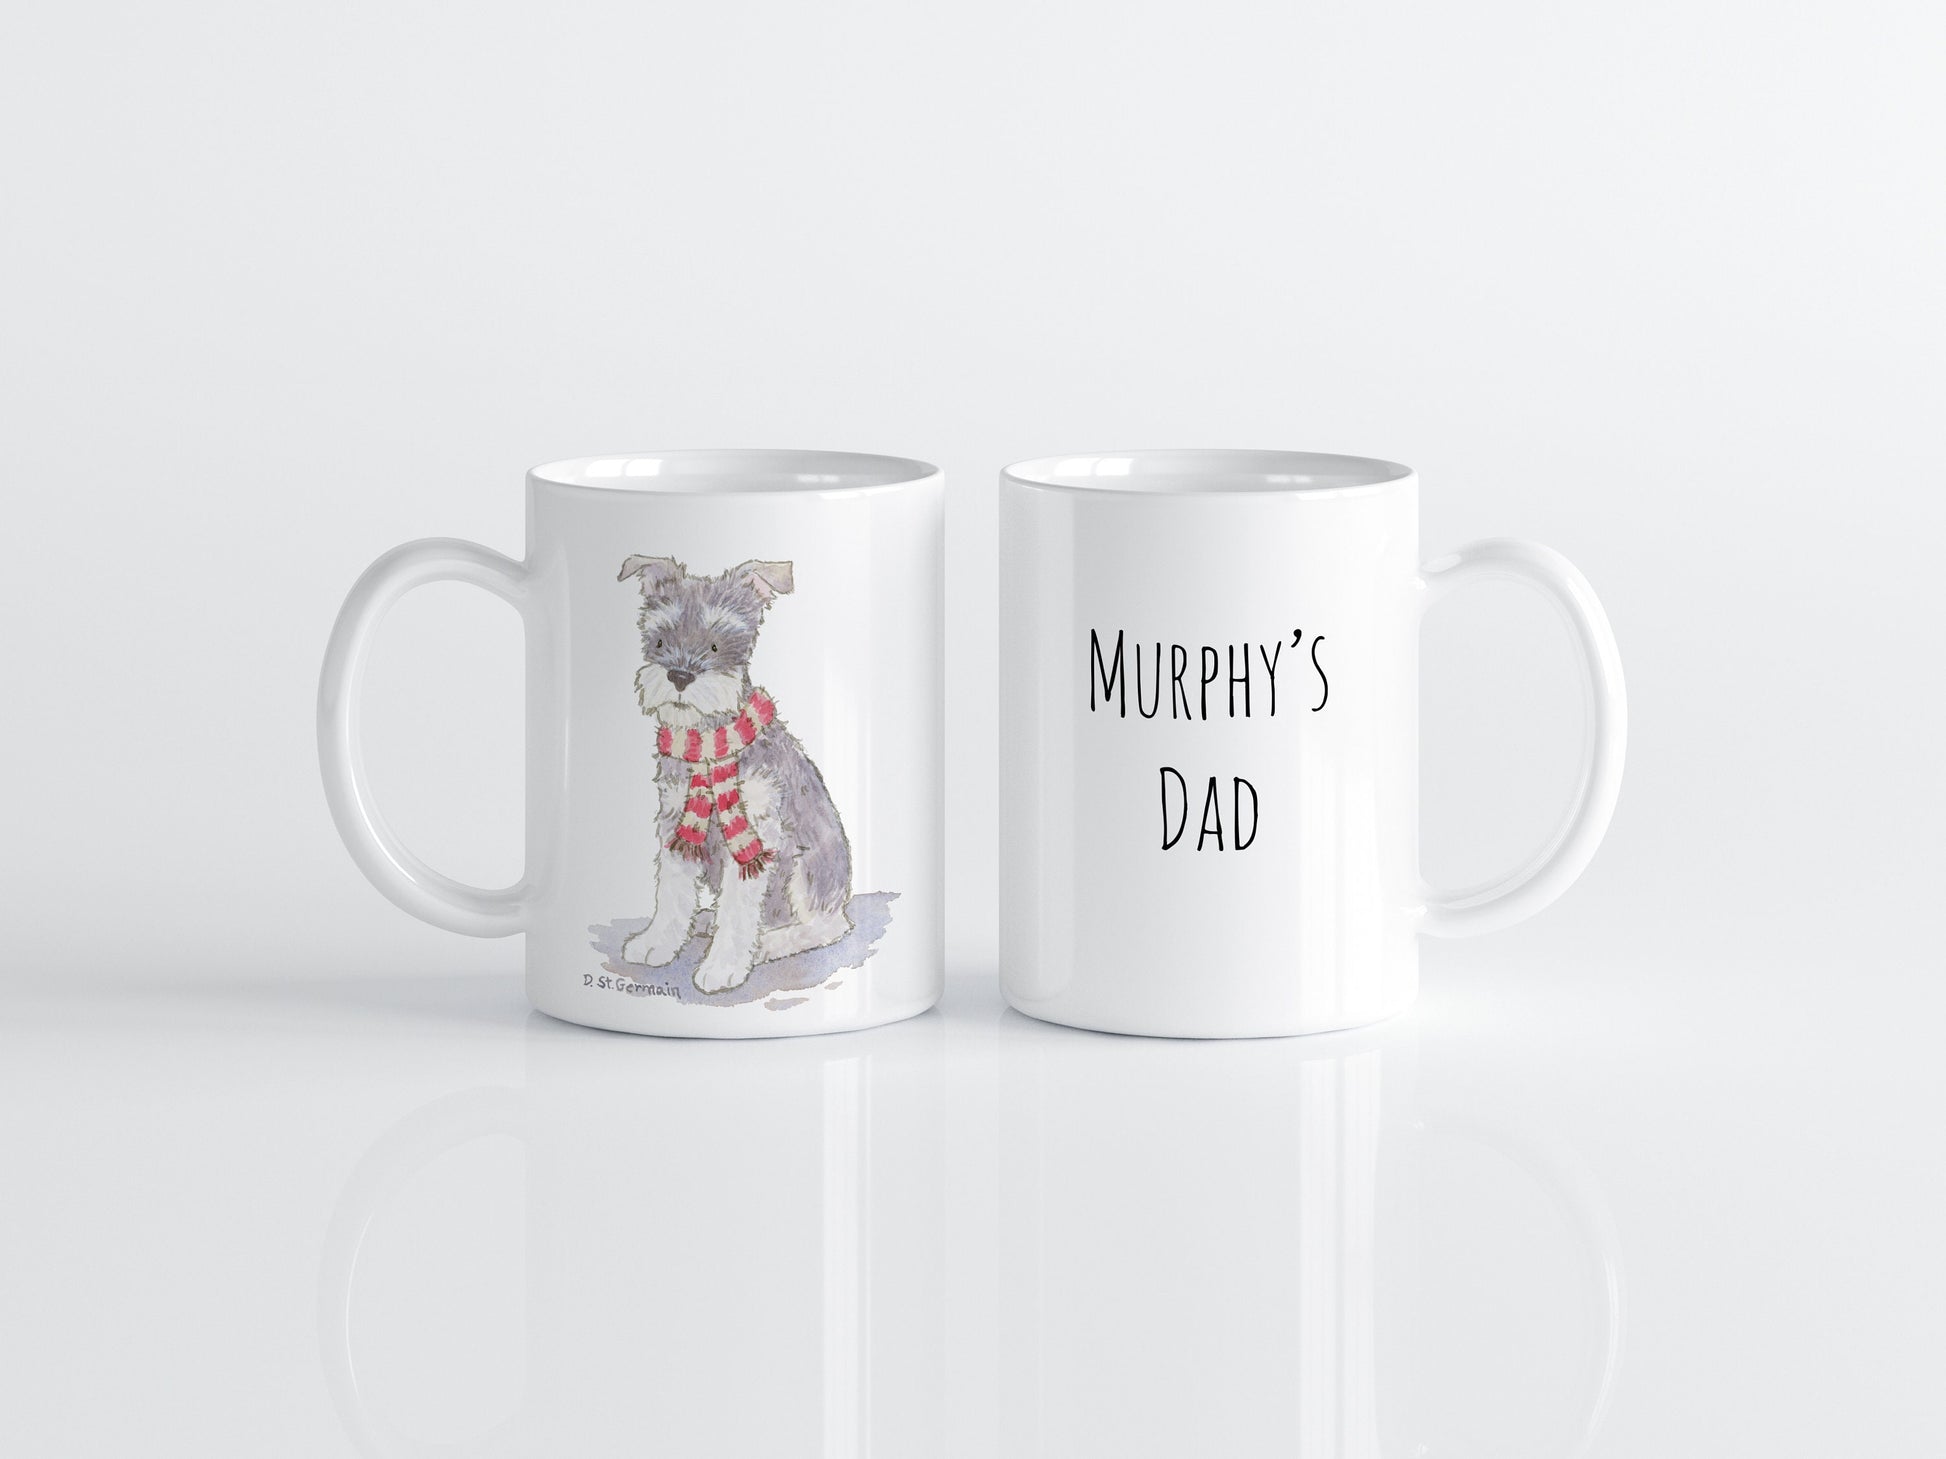 Holiday Schnauzer Mug, Schnauzer Gift, Schnauzer Lover, Dog Mom Gift, Personalized Mug, Christmas Schnauzer, Cute Mug, Custom Dog Lover Gift